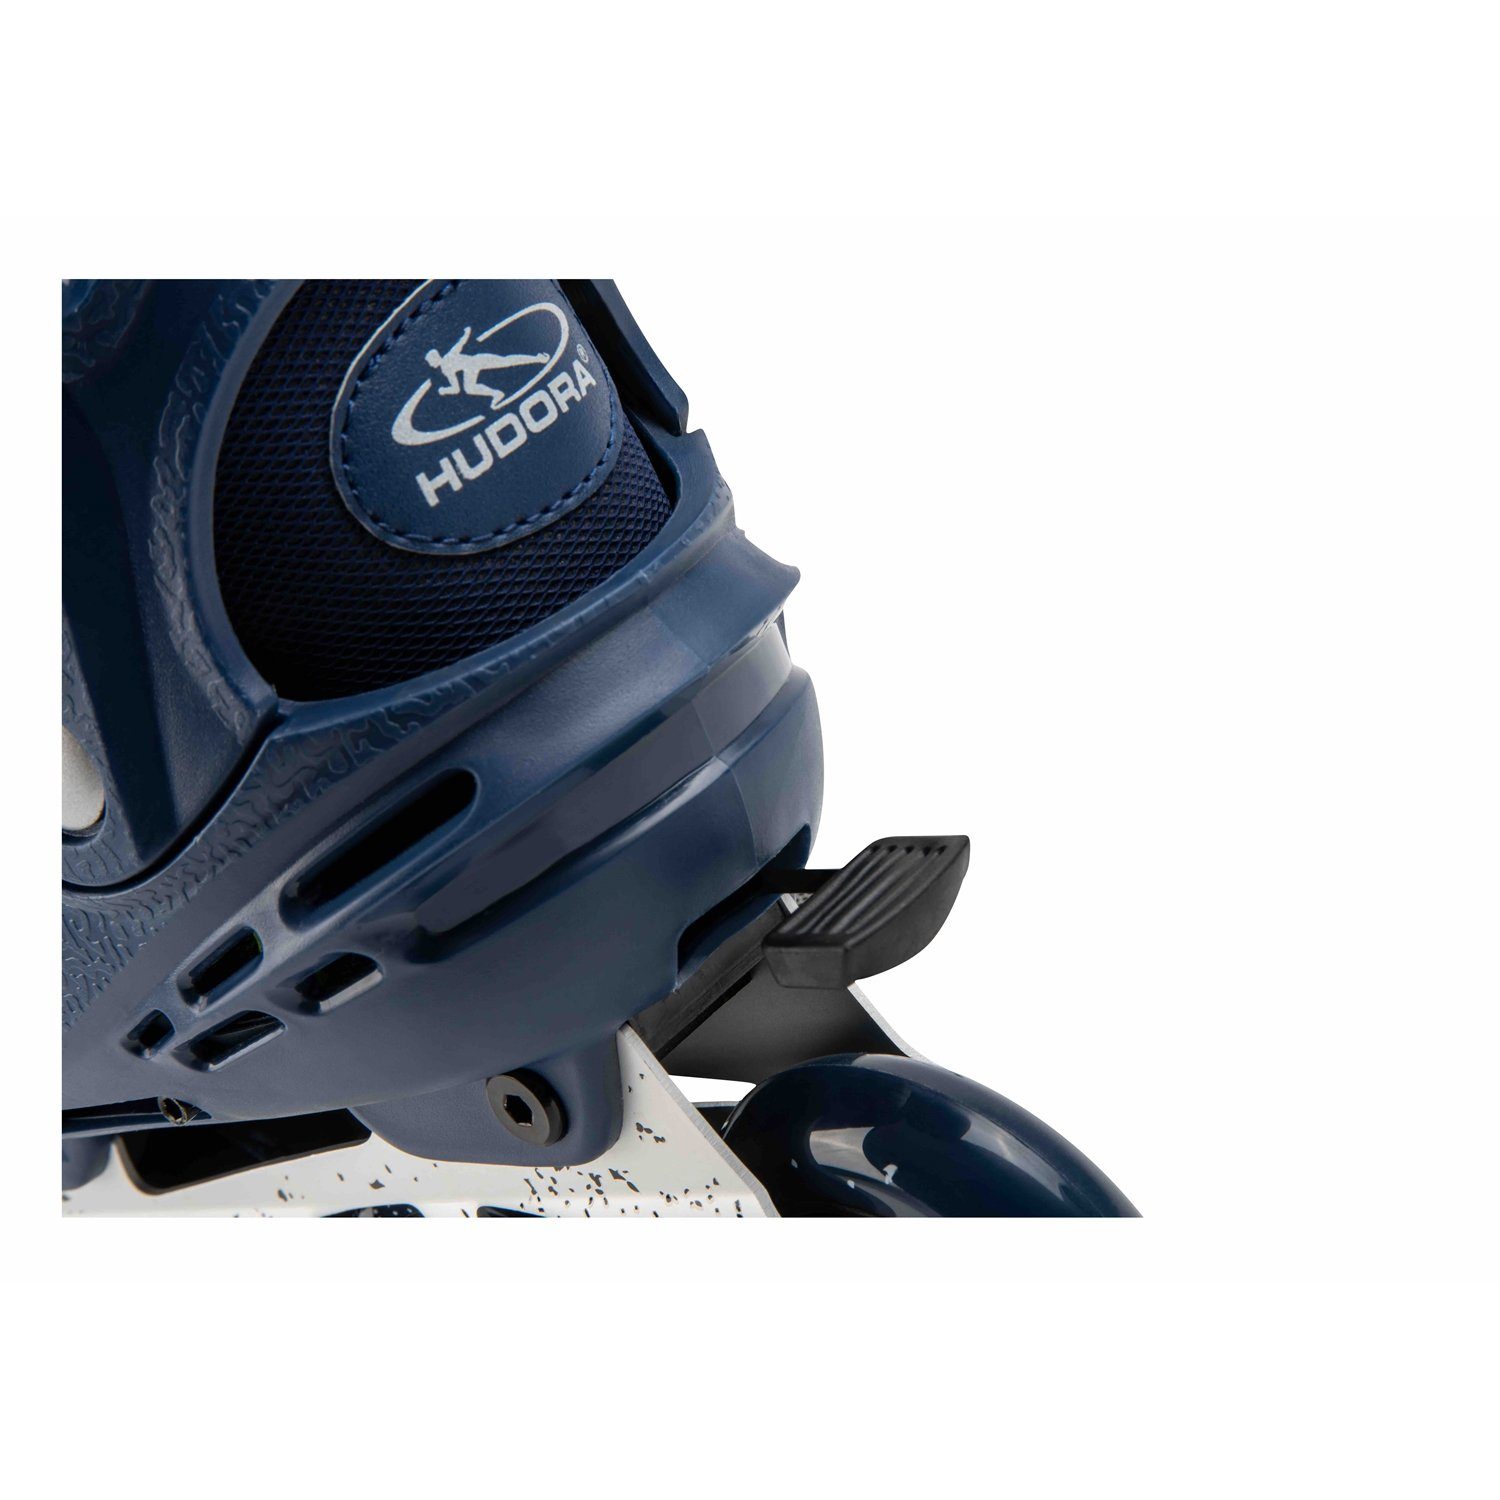 Hudora Skates deep Scooter 28450 Gr.29-34 Comfort, Blue Inline